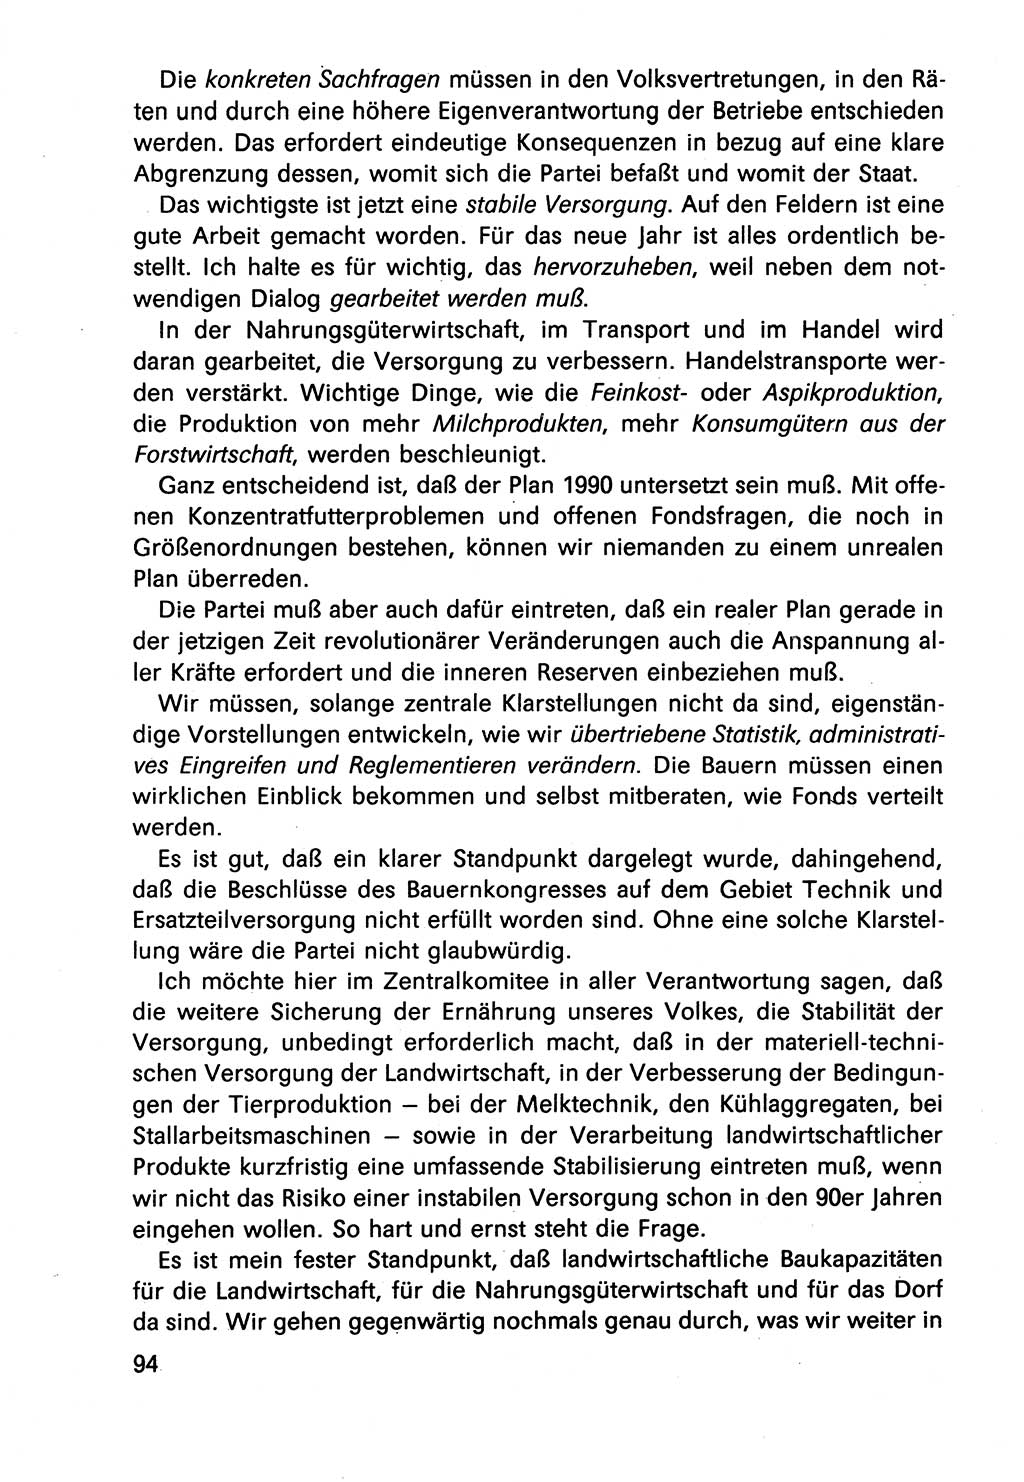 Diskussionsbeiträge, 10. Tagung des ZK (Zentralkomitee) der SED (Sozialistische Einheitspartei Deutschlands) [Deutsche Demokratische Republik (DDR)] 1989, Seite 94 (Disk.-Beitr. 10. Tg. ZK SED DDR 1989, S. 94)